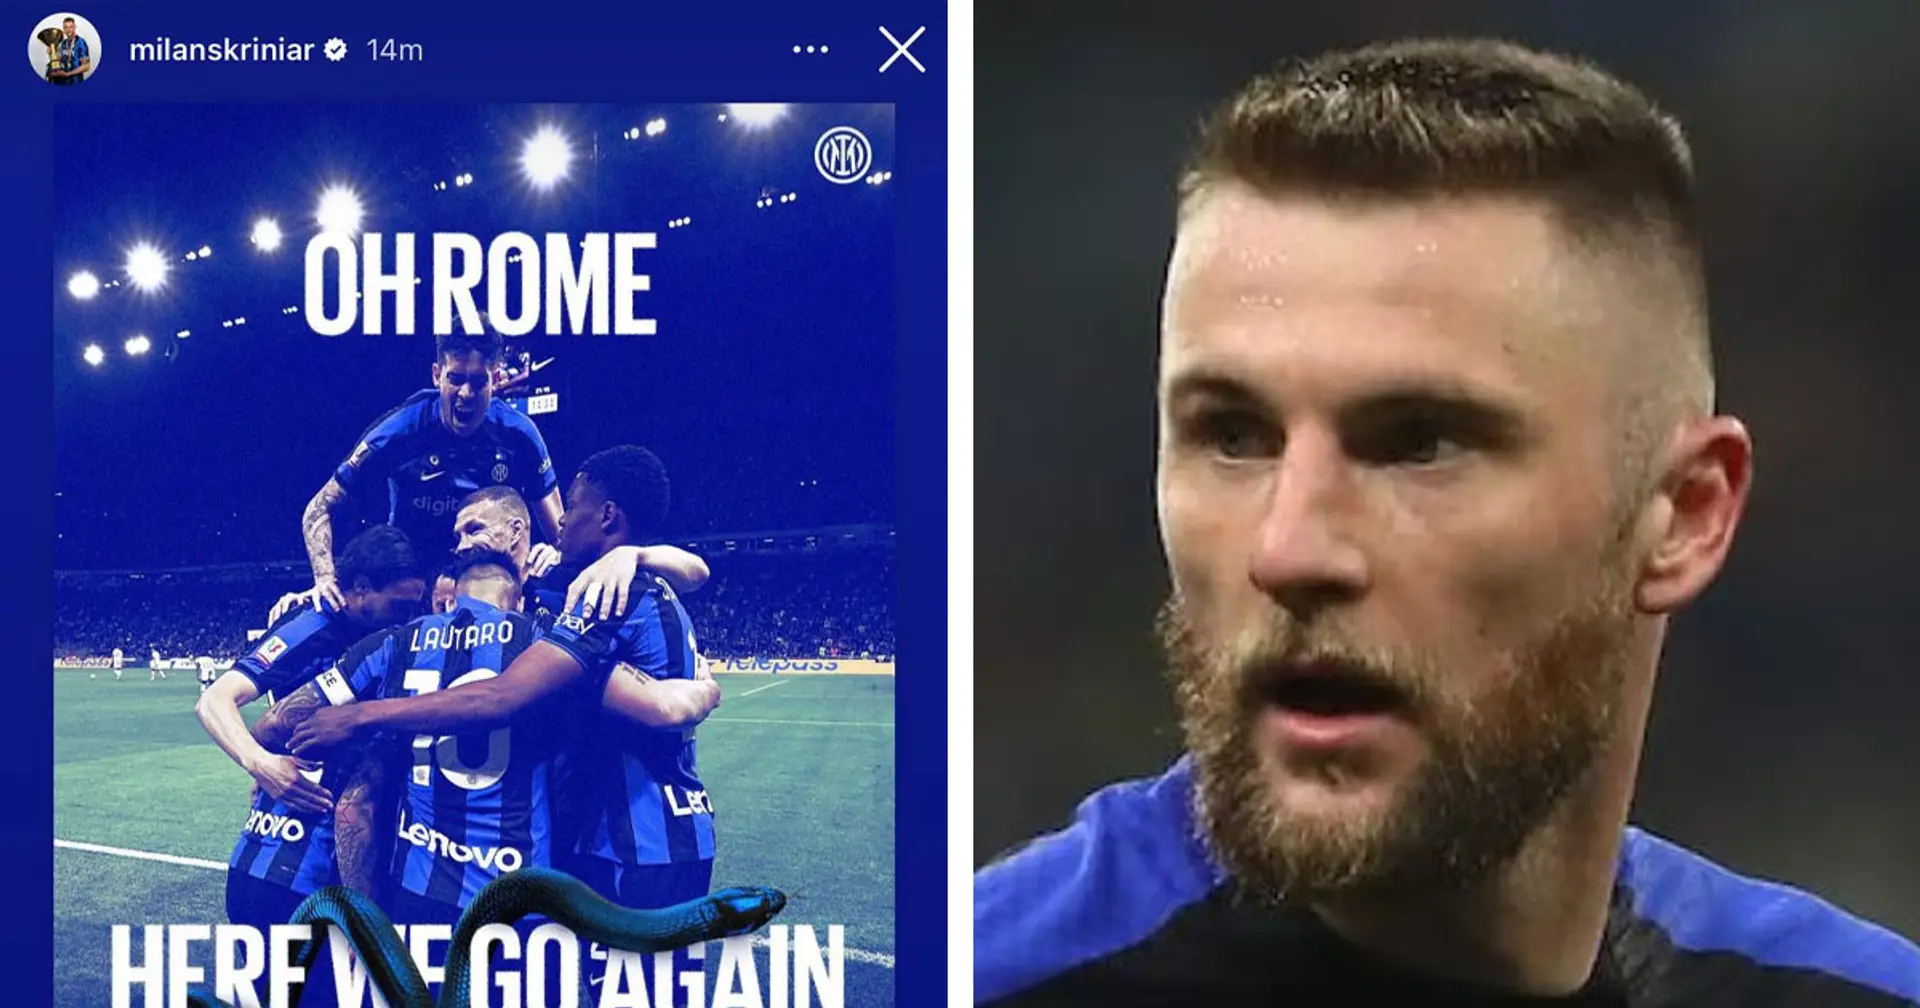 "Il applaudit pour le prix, pas pour autre chose", les fans de l'Inter réagissent mal à la célébration de Skriniar en Coupe d'Italie